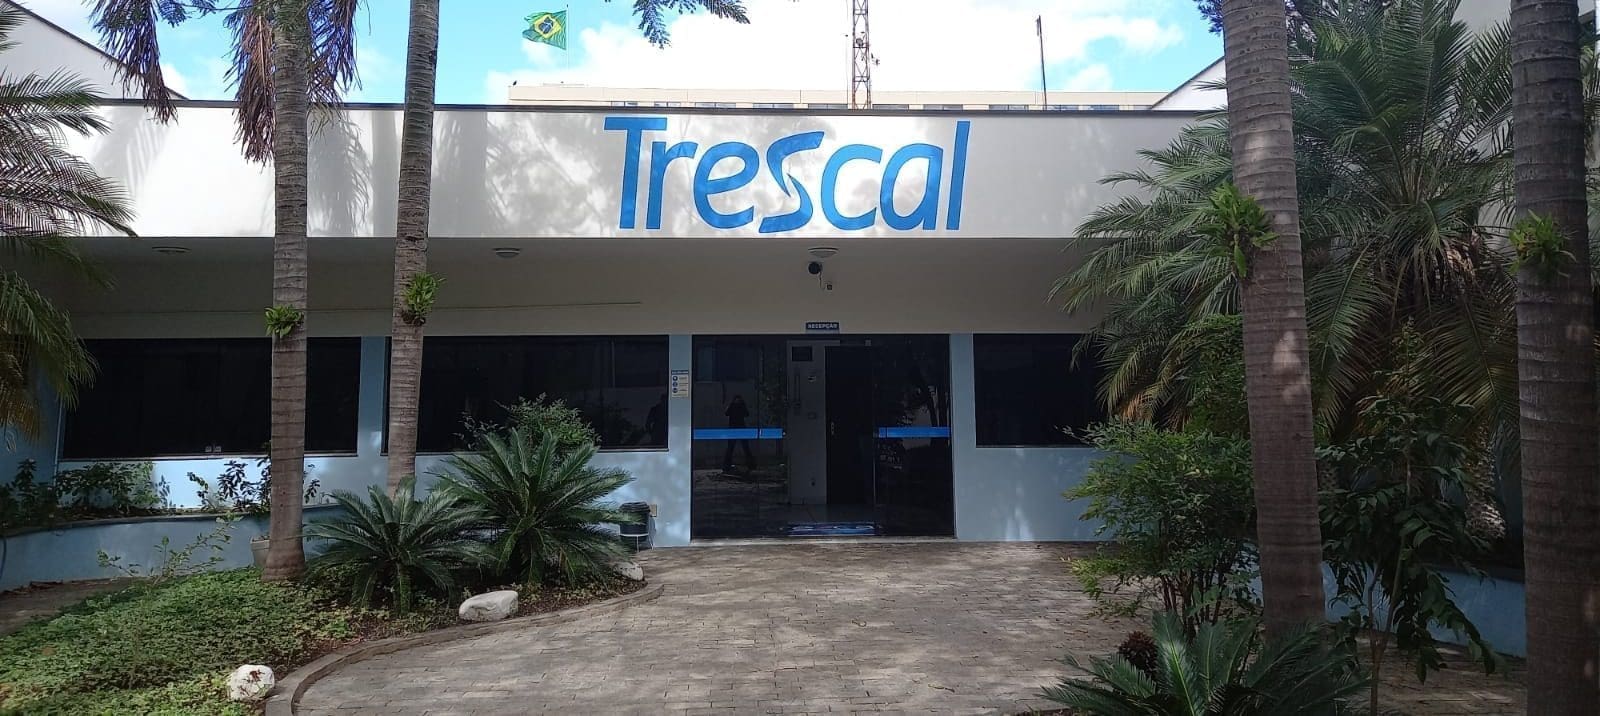 TRESCAL CERQUILHO BRAZIL (3)